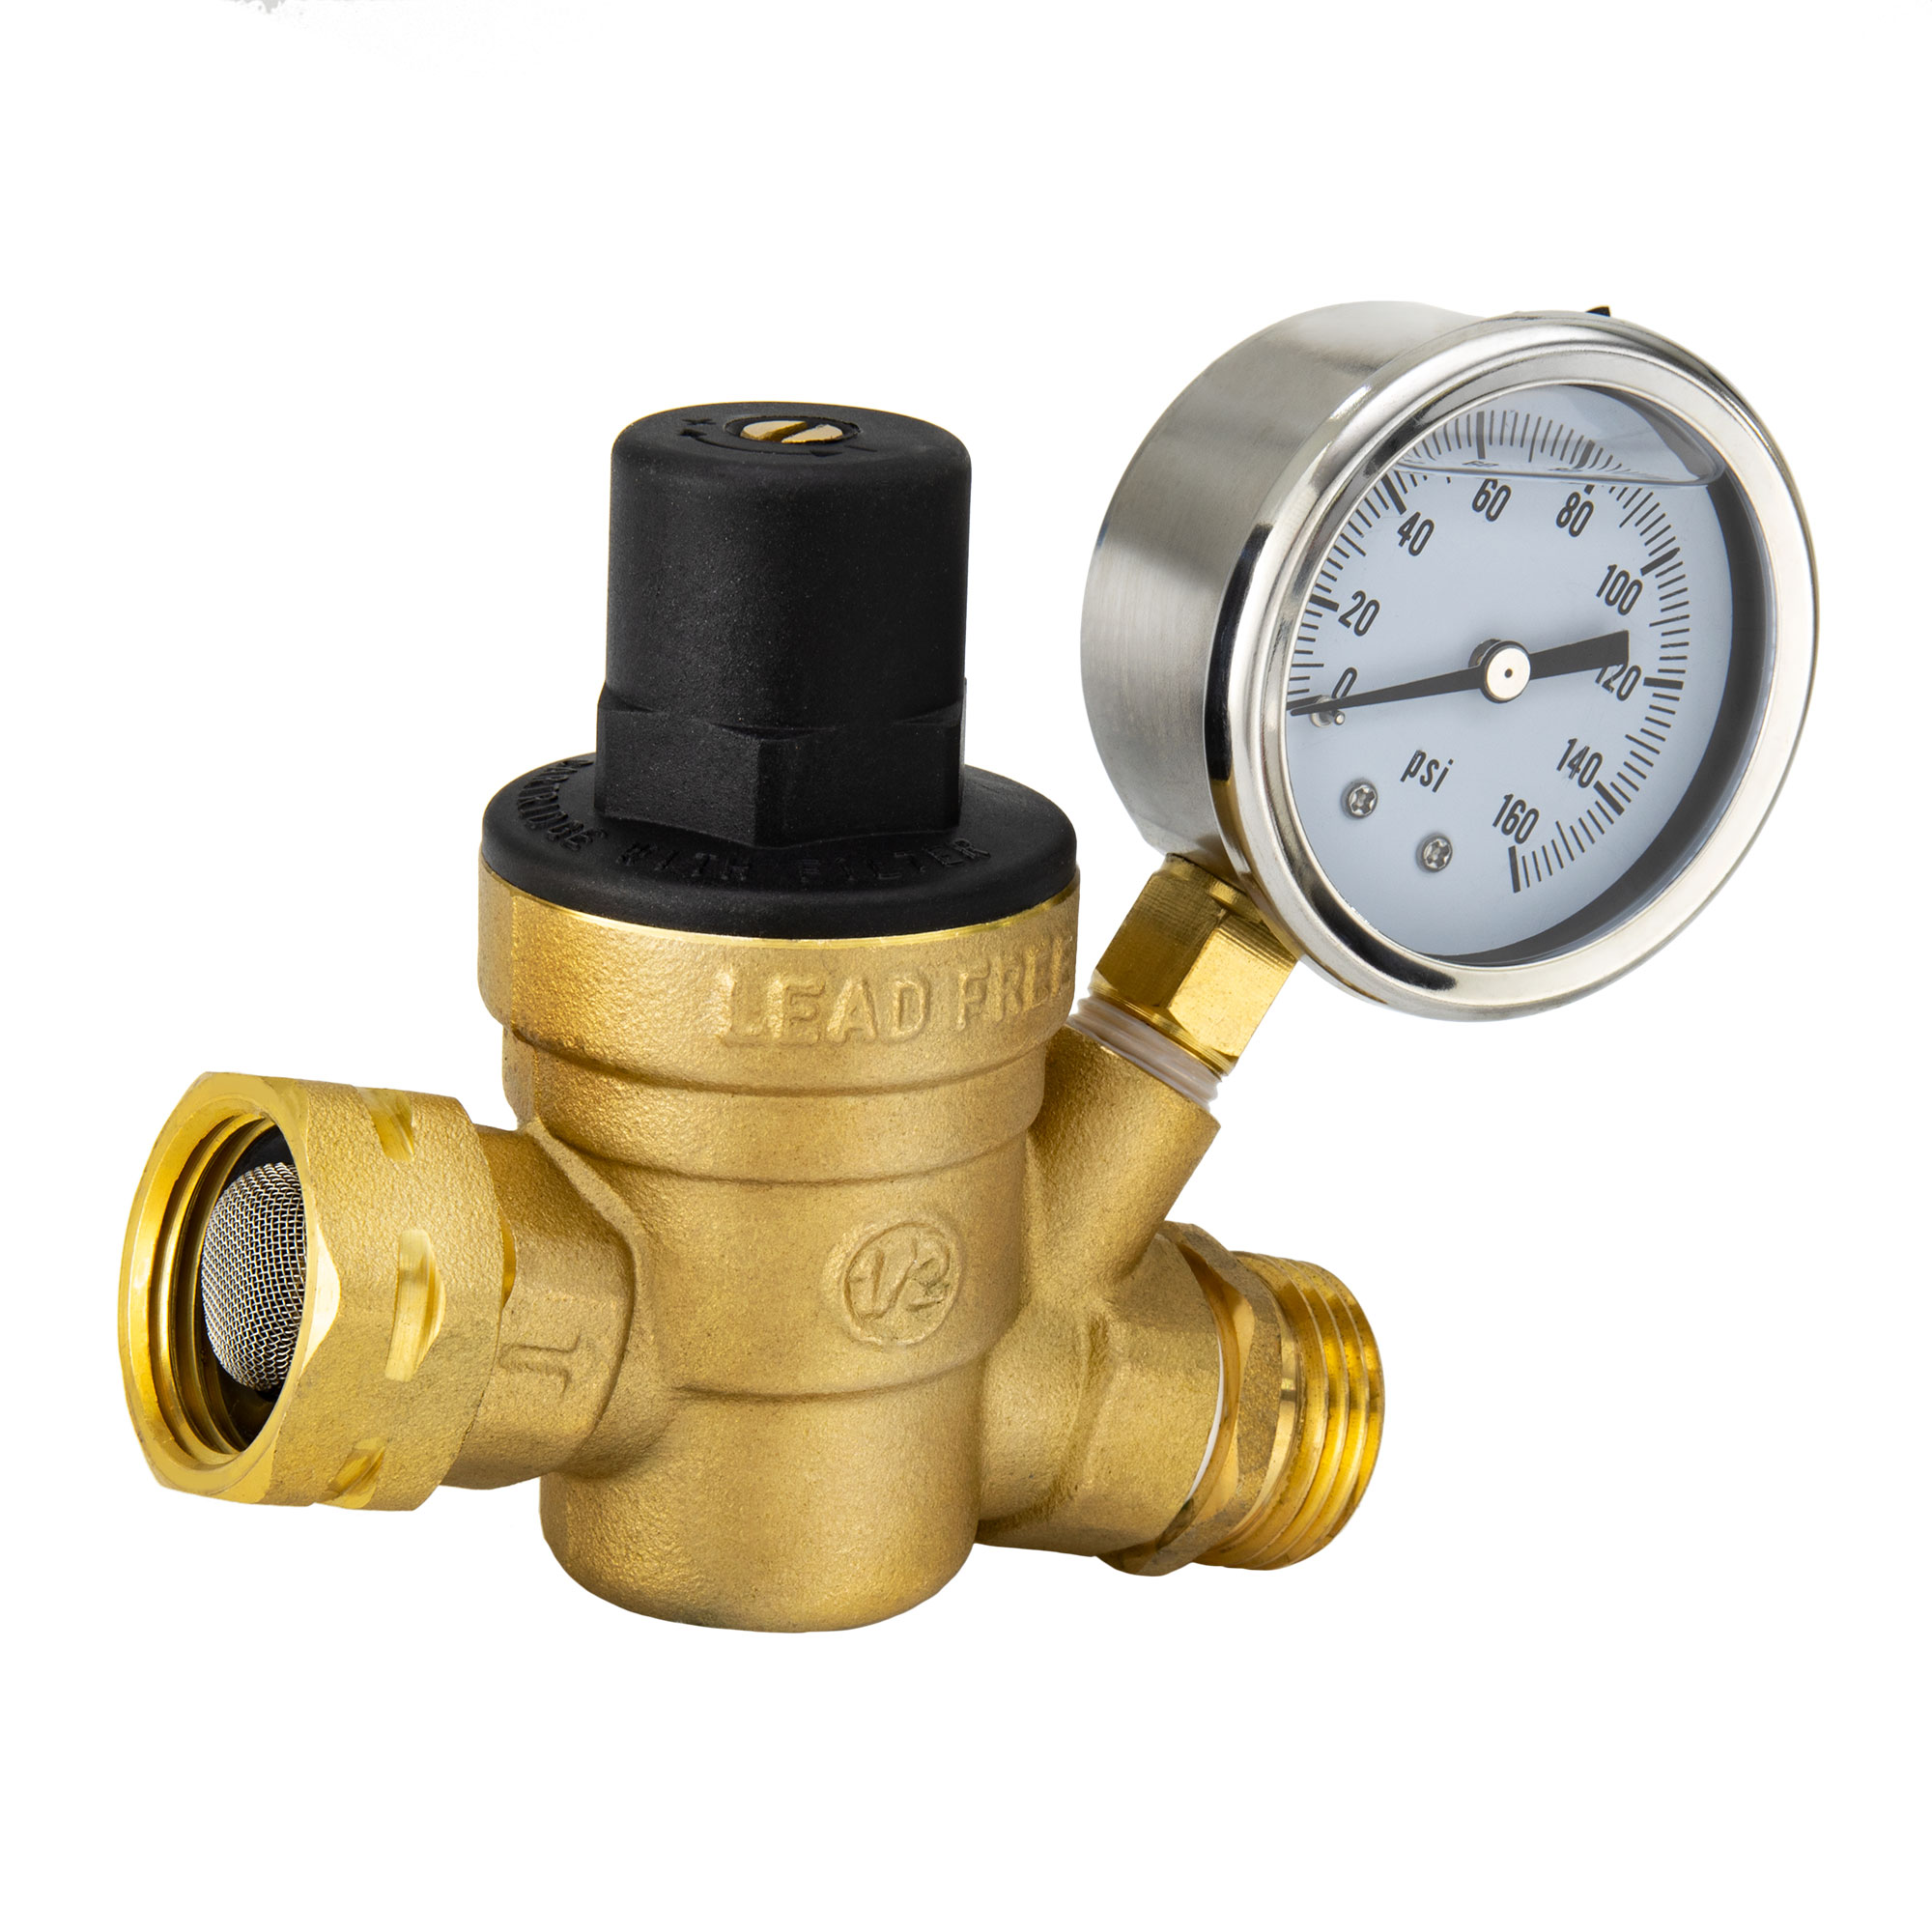 Kohree Adjustable RV Water Pressure Regulator with Gauge